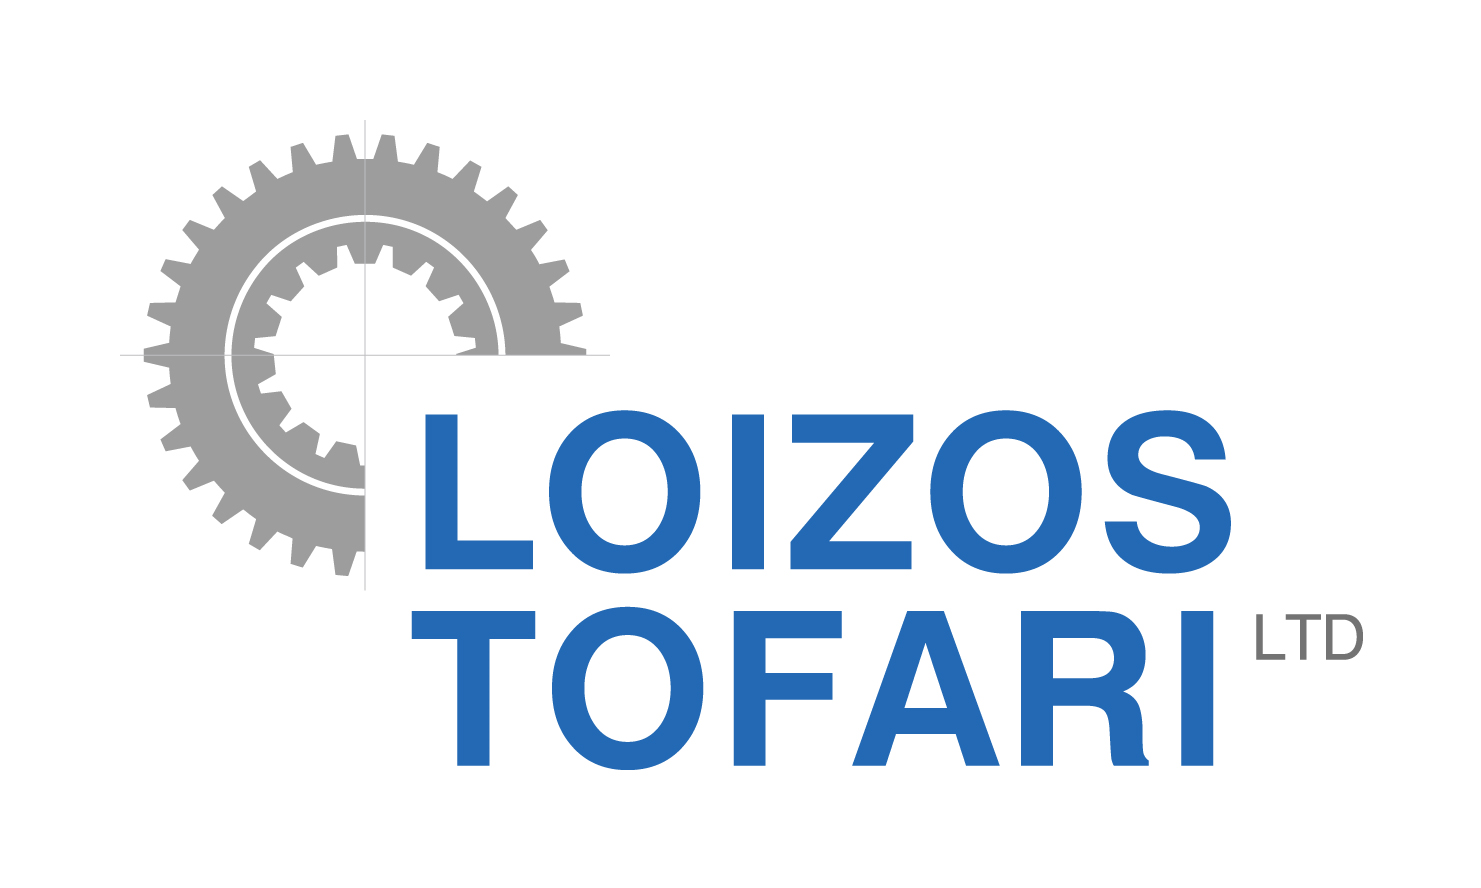 LOIZOS TOFARI LTD